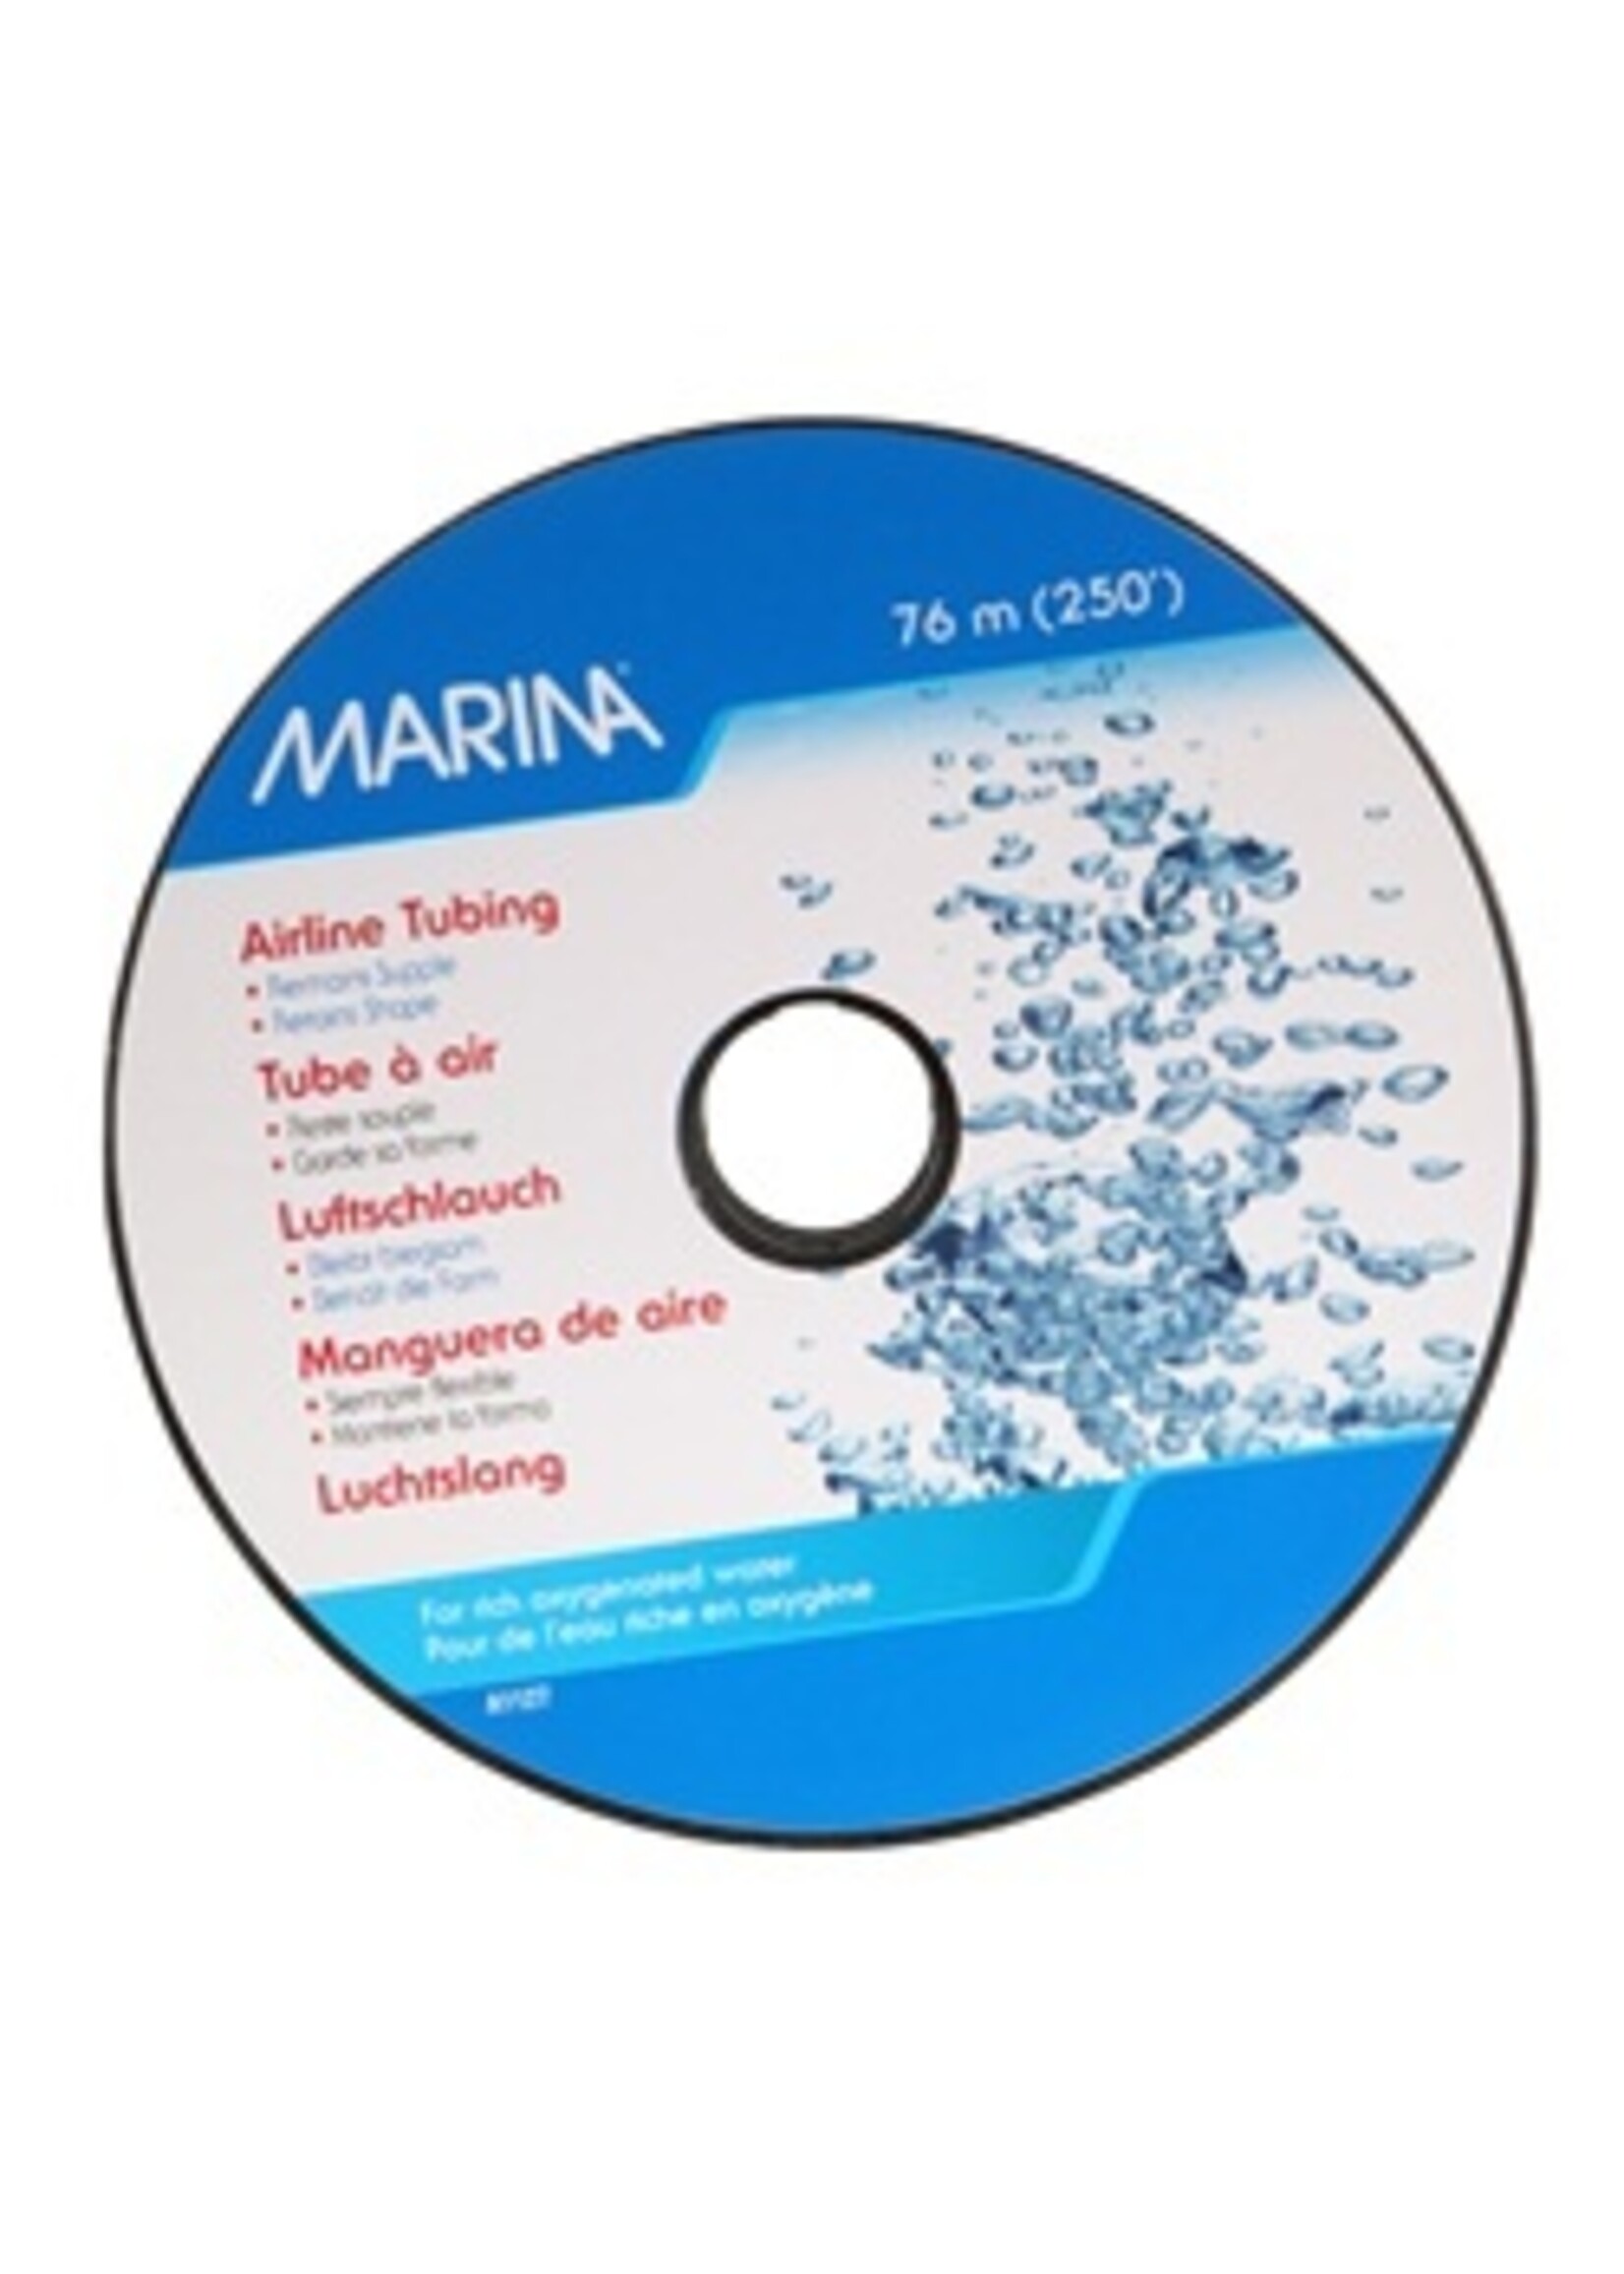 Marina Marina Regular Air Tubing .30/ft